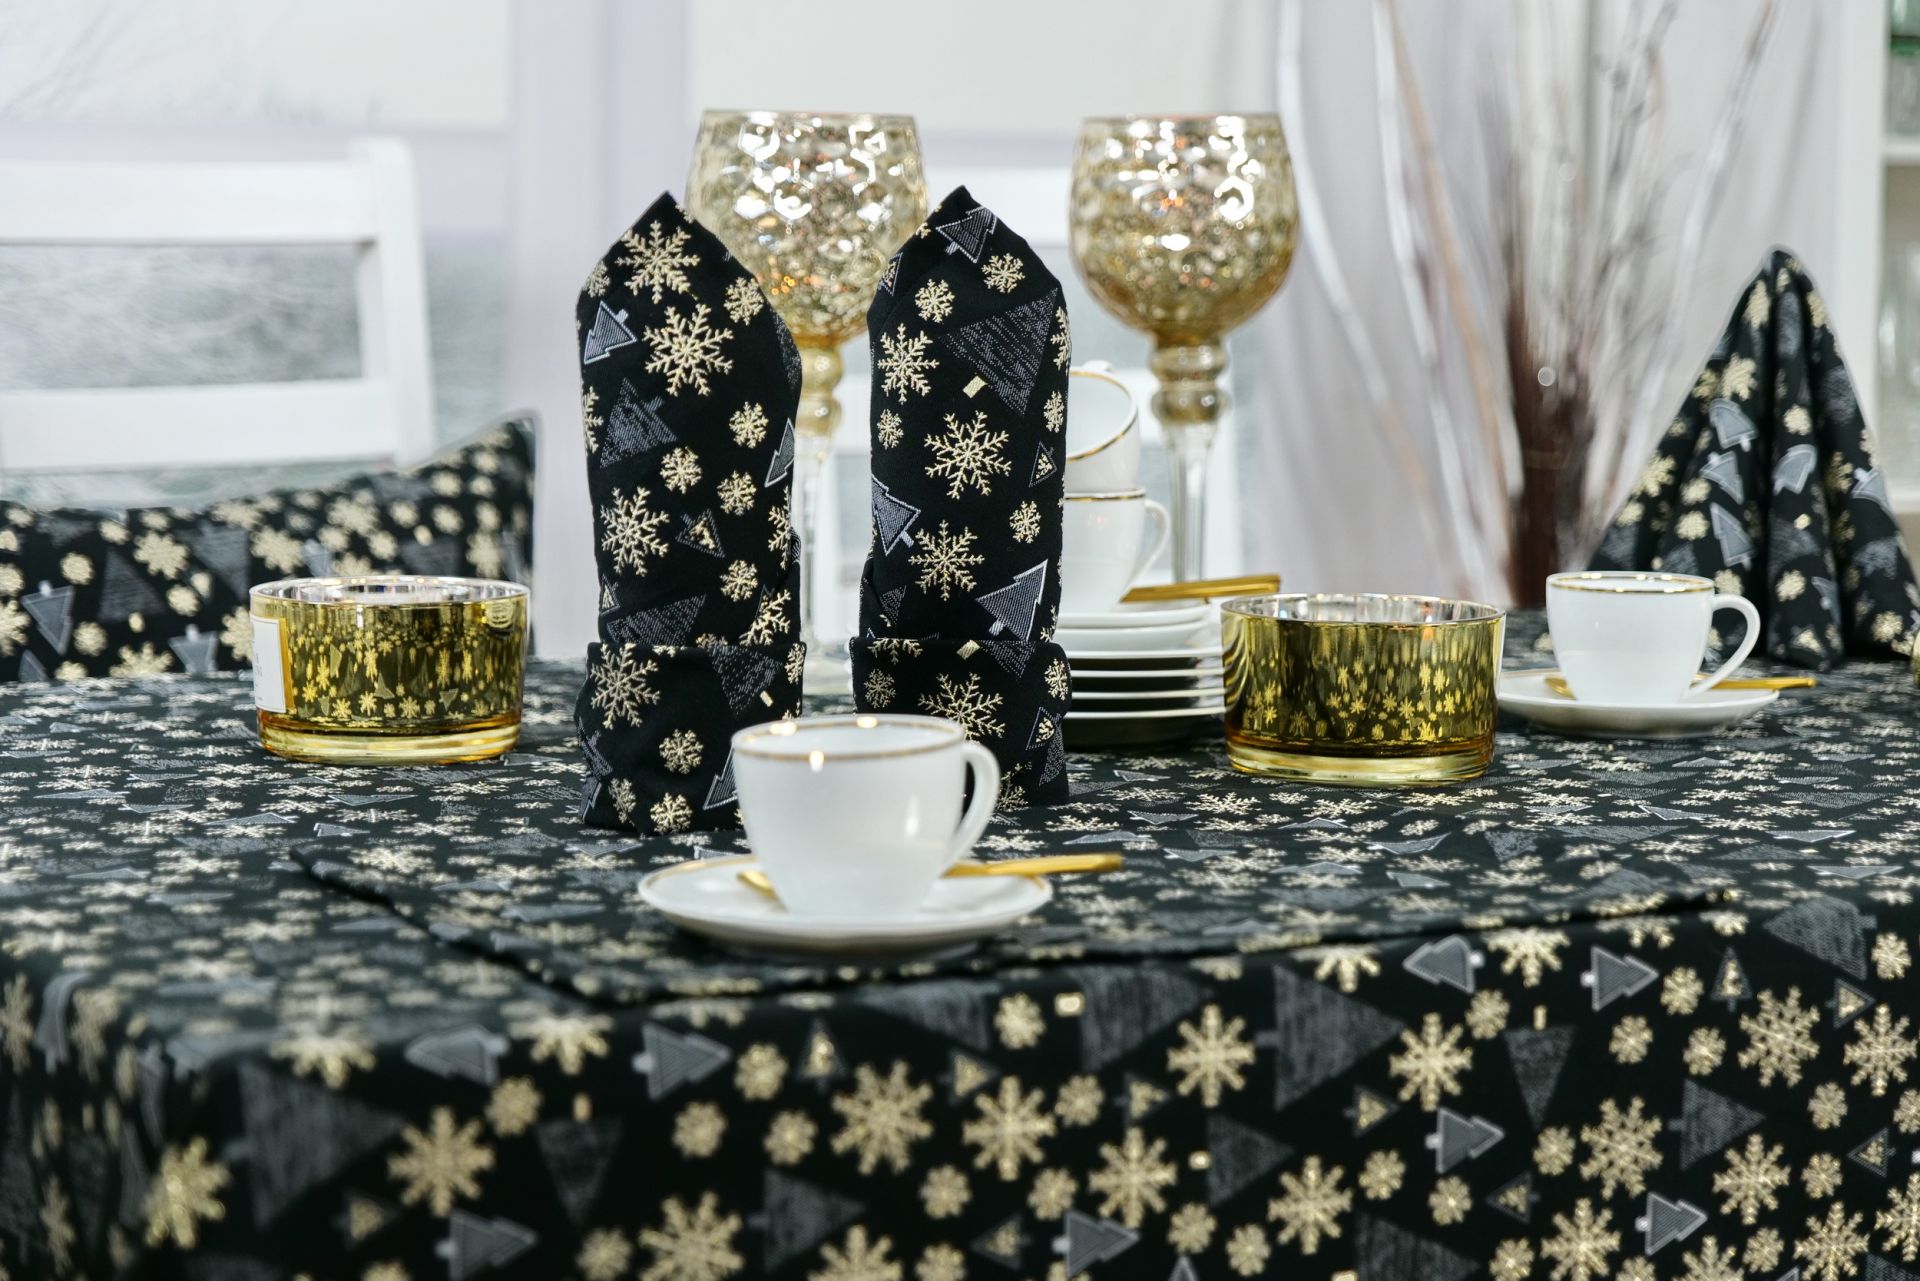 Weihnachtstischdecke mit Stil:Nobel, Klassisch und Edel in Schwarz Gold |  TiDeko® Tischdecken-Shop.de. Tischdecken Markenqualität